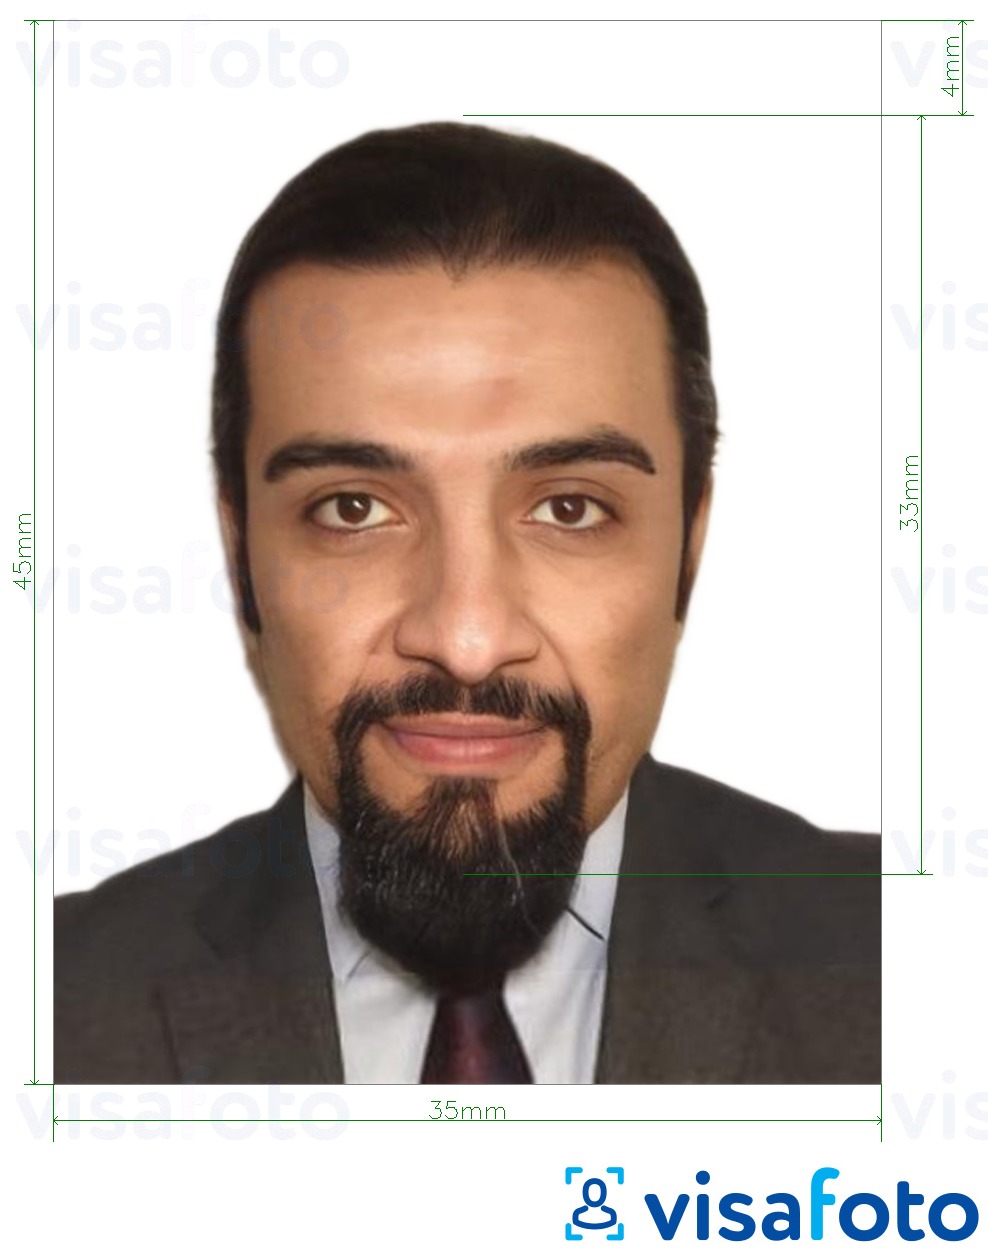 सटीक आकार विनिर्देश के साथ ट्यूनीशिया आईडी कार्ड 3.5x4.5 सेमी (35x45 मिमी) के लिए तस्वीर का उदाहरण